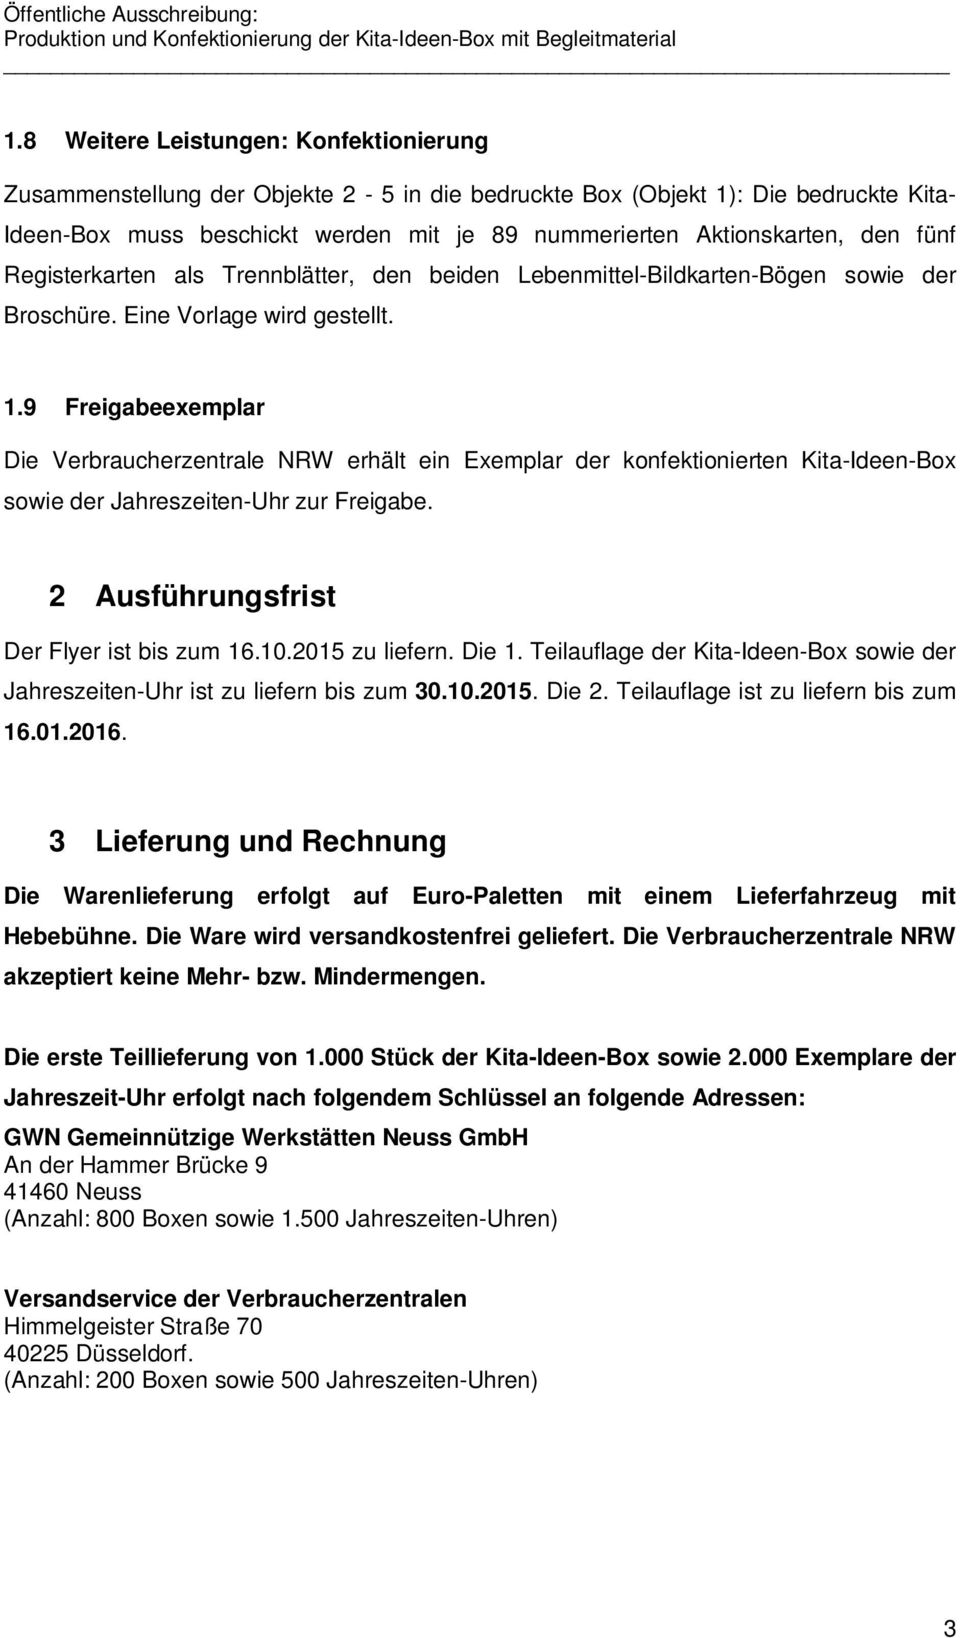 9 Freigabeexemplar Die Verbraucherzentrale NRW erhält ein Exemplar der konfektionierten Kita-Ideen-Box sowie der Jahreszeiten-Uhr zur Freigabe. 2 Ausführungsfrist Der Flyer ist bis zum 16.10.